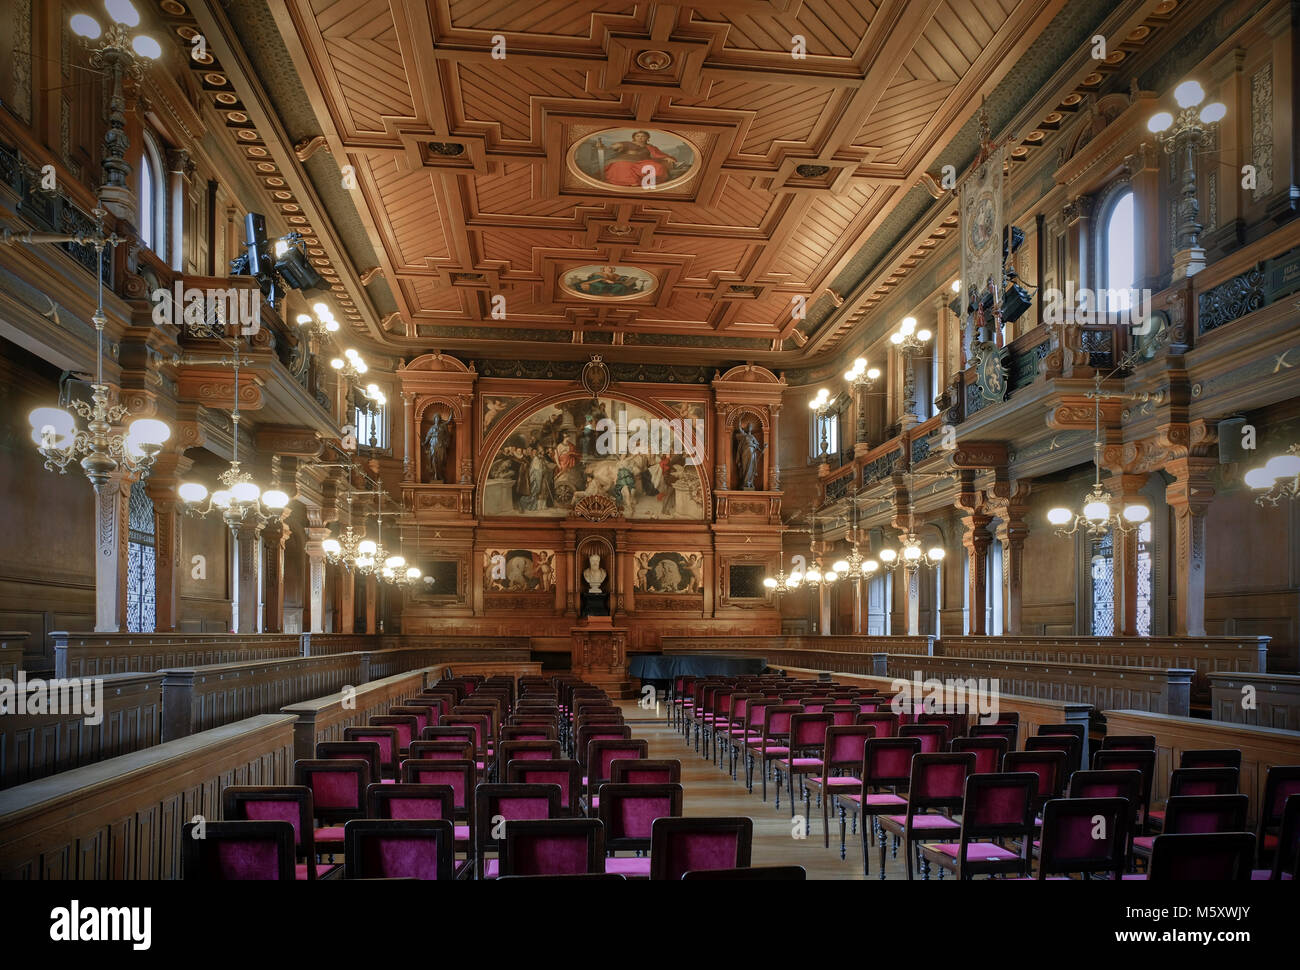 Heidelberg, Alte Universität, Alte Aula, 1886 von Josef Durm umgestaltet, Haupt-Repräsentationsraum der Universität Stock Photo